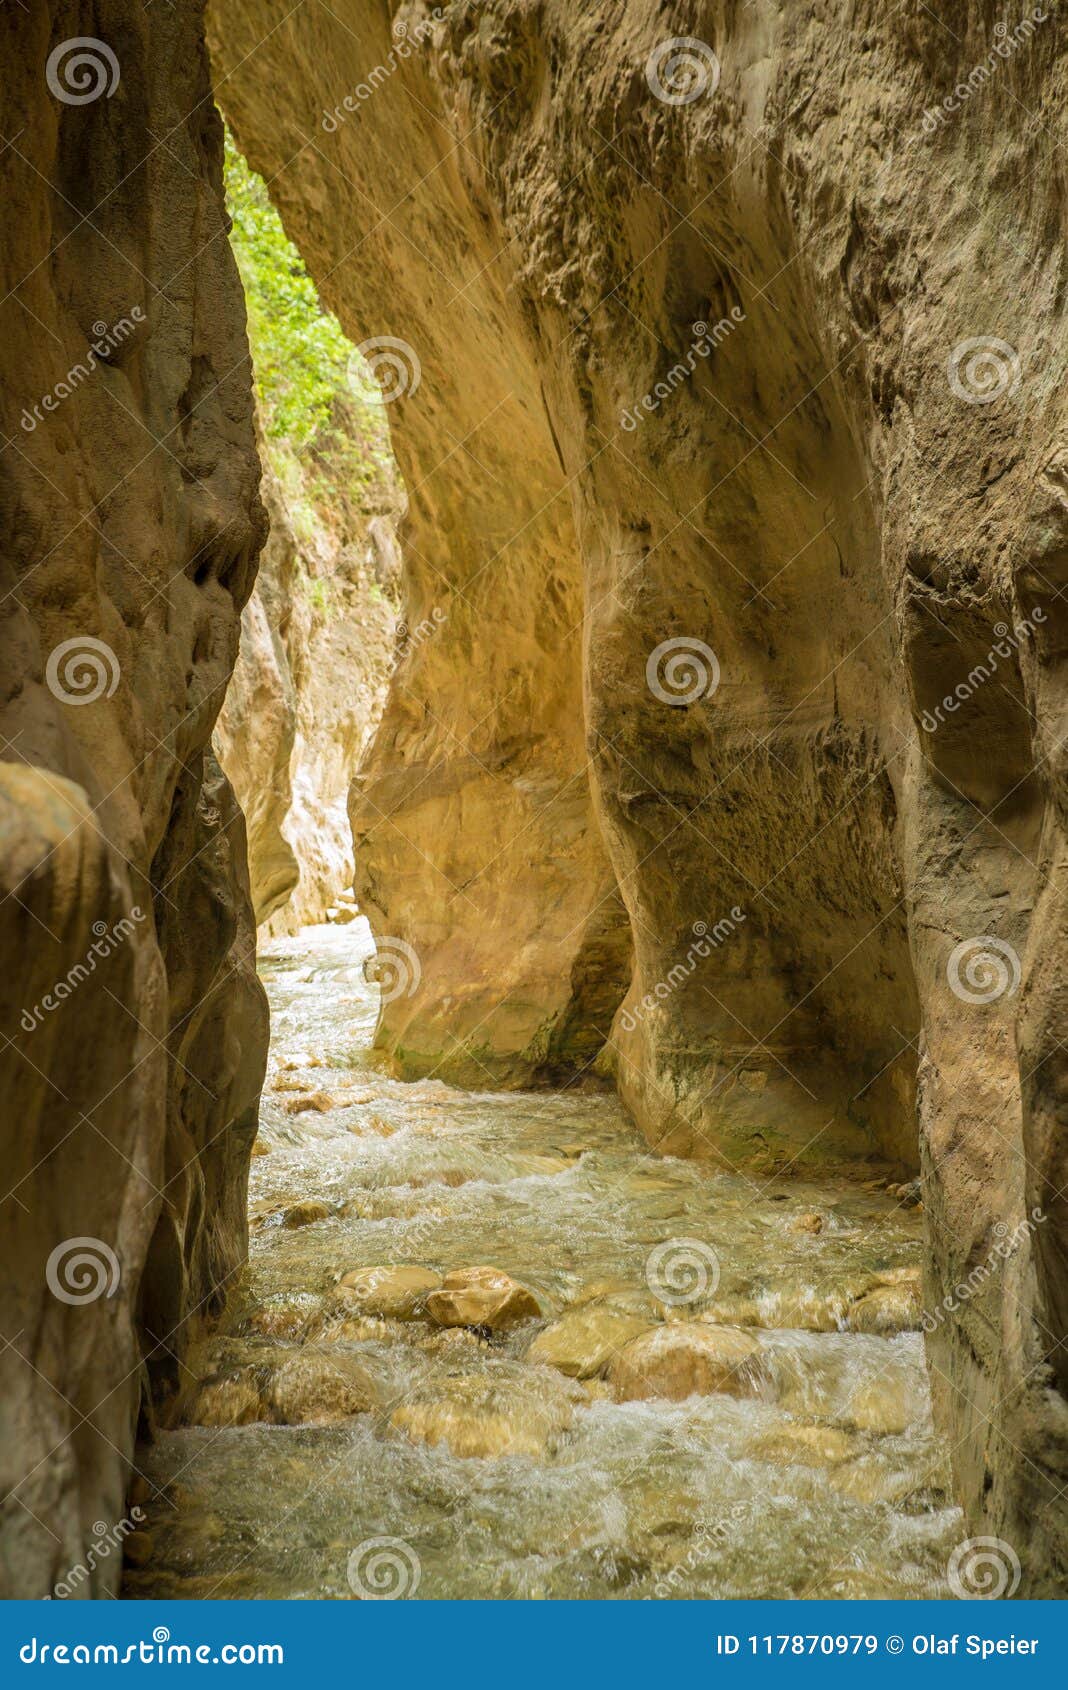 gritar river gorge